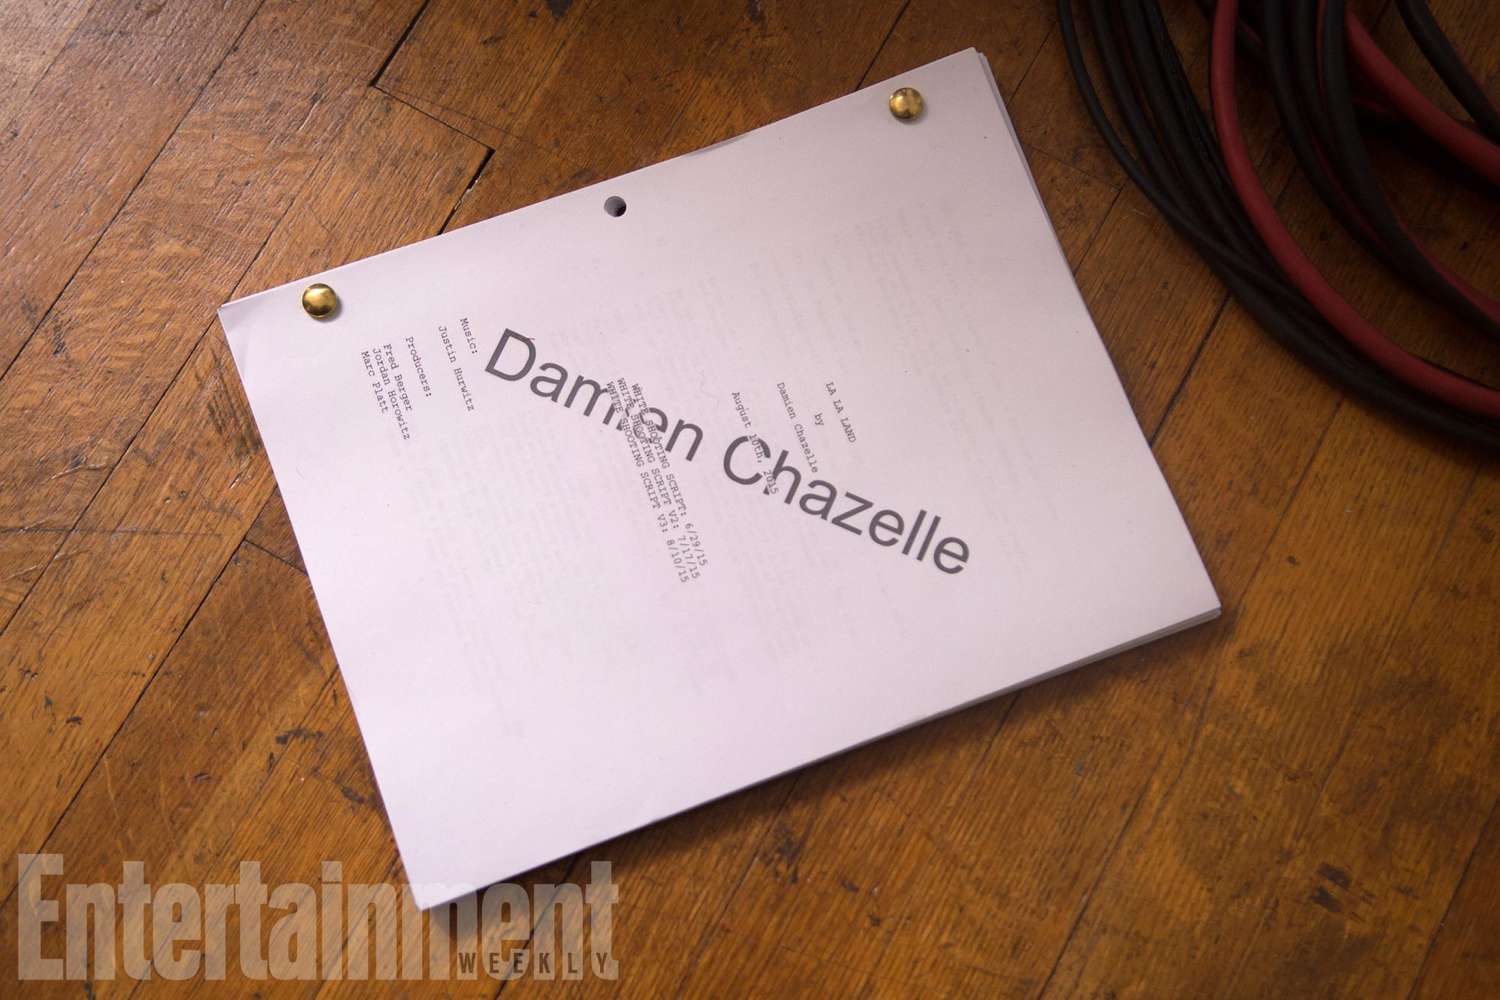 Damien Chazelle's Script